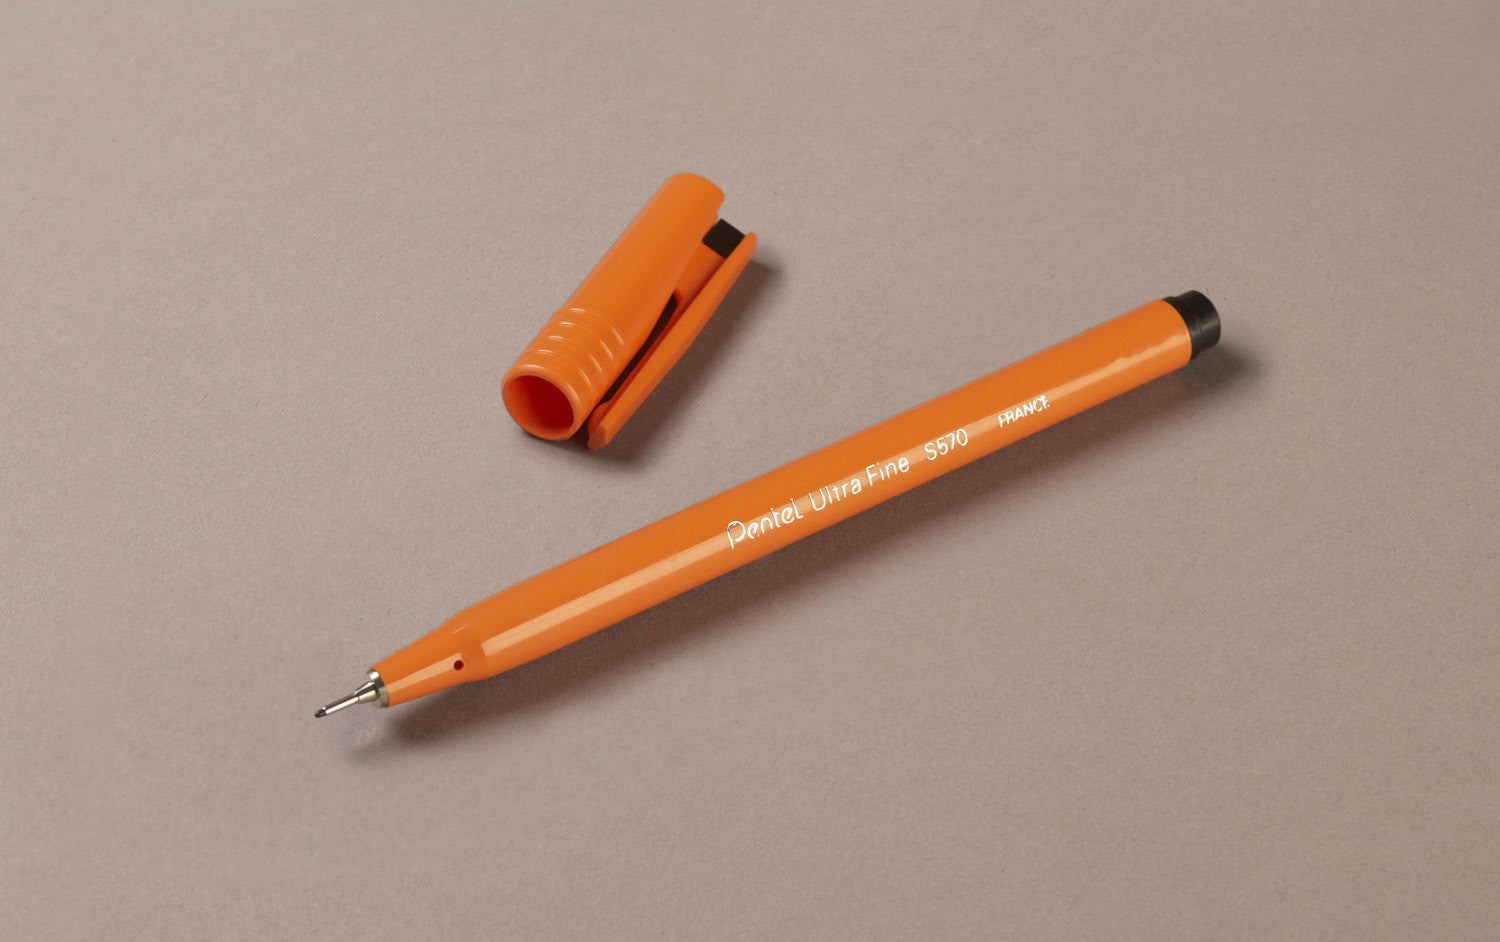 Caran d'Ache 825 1.4mm Ballpoint Pen – Choosing Keeping